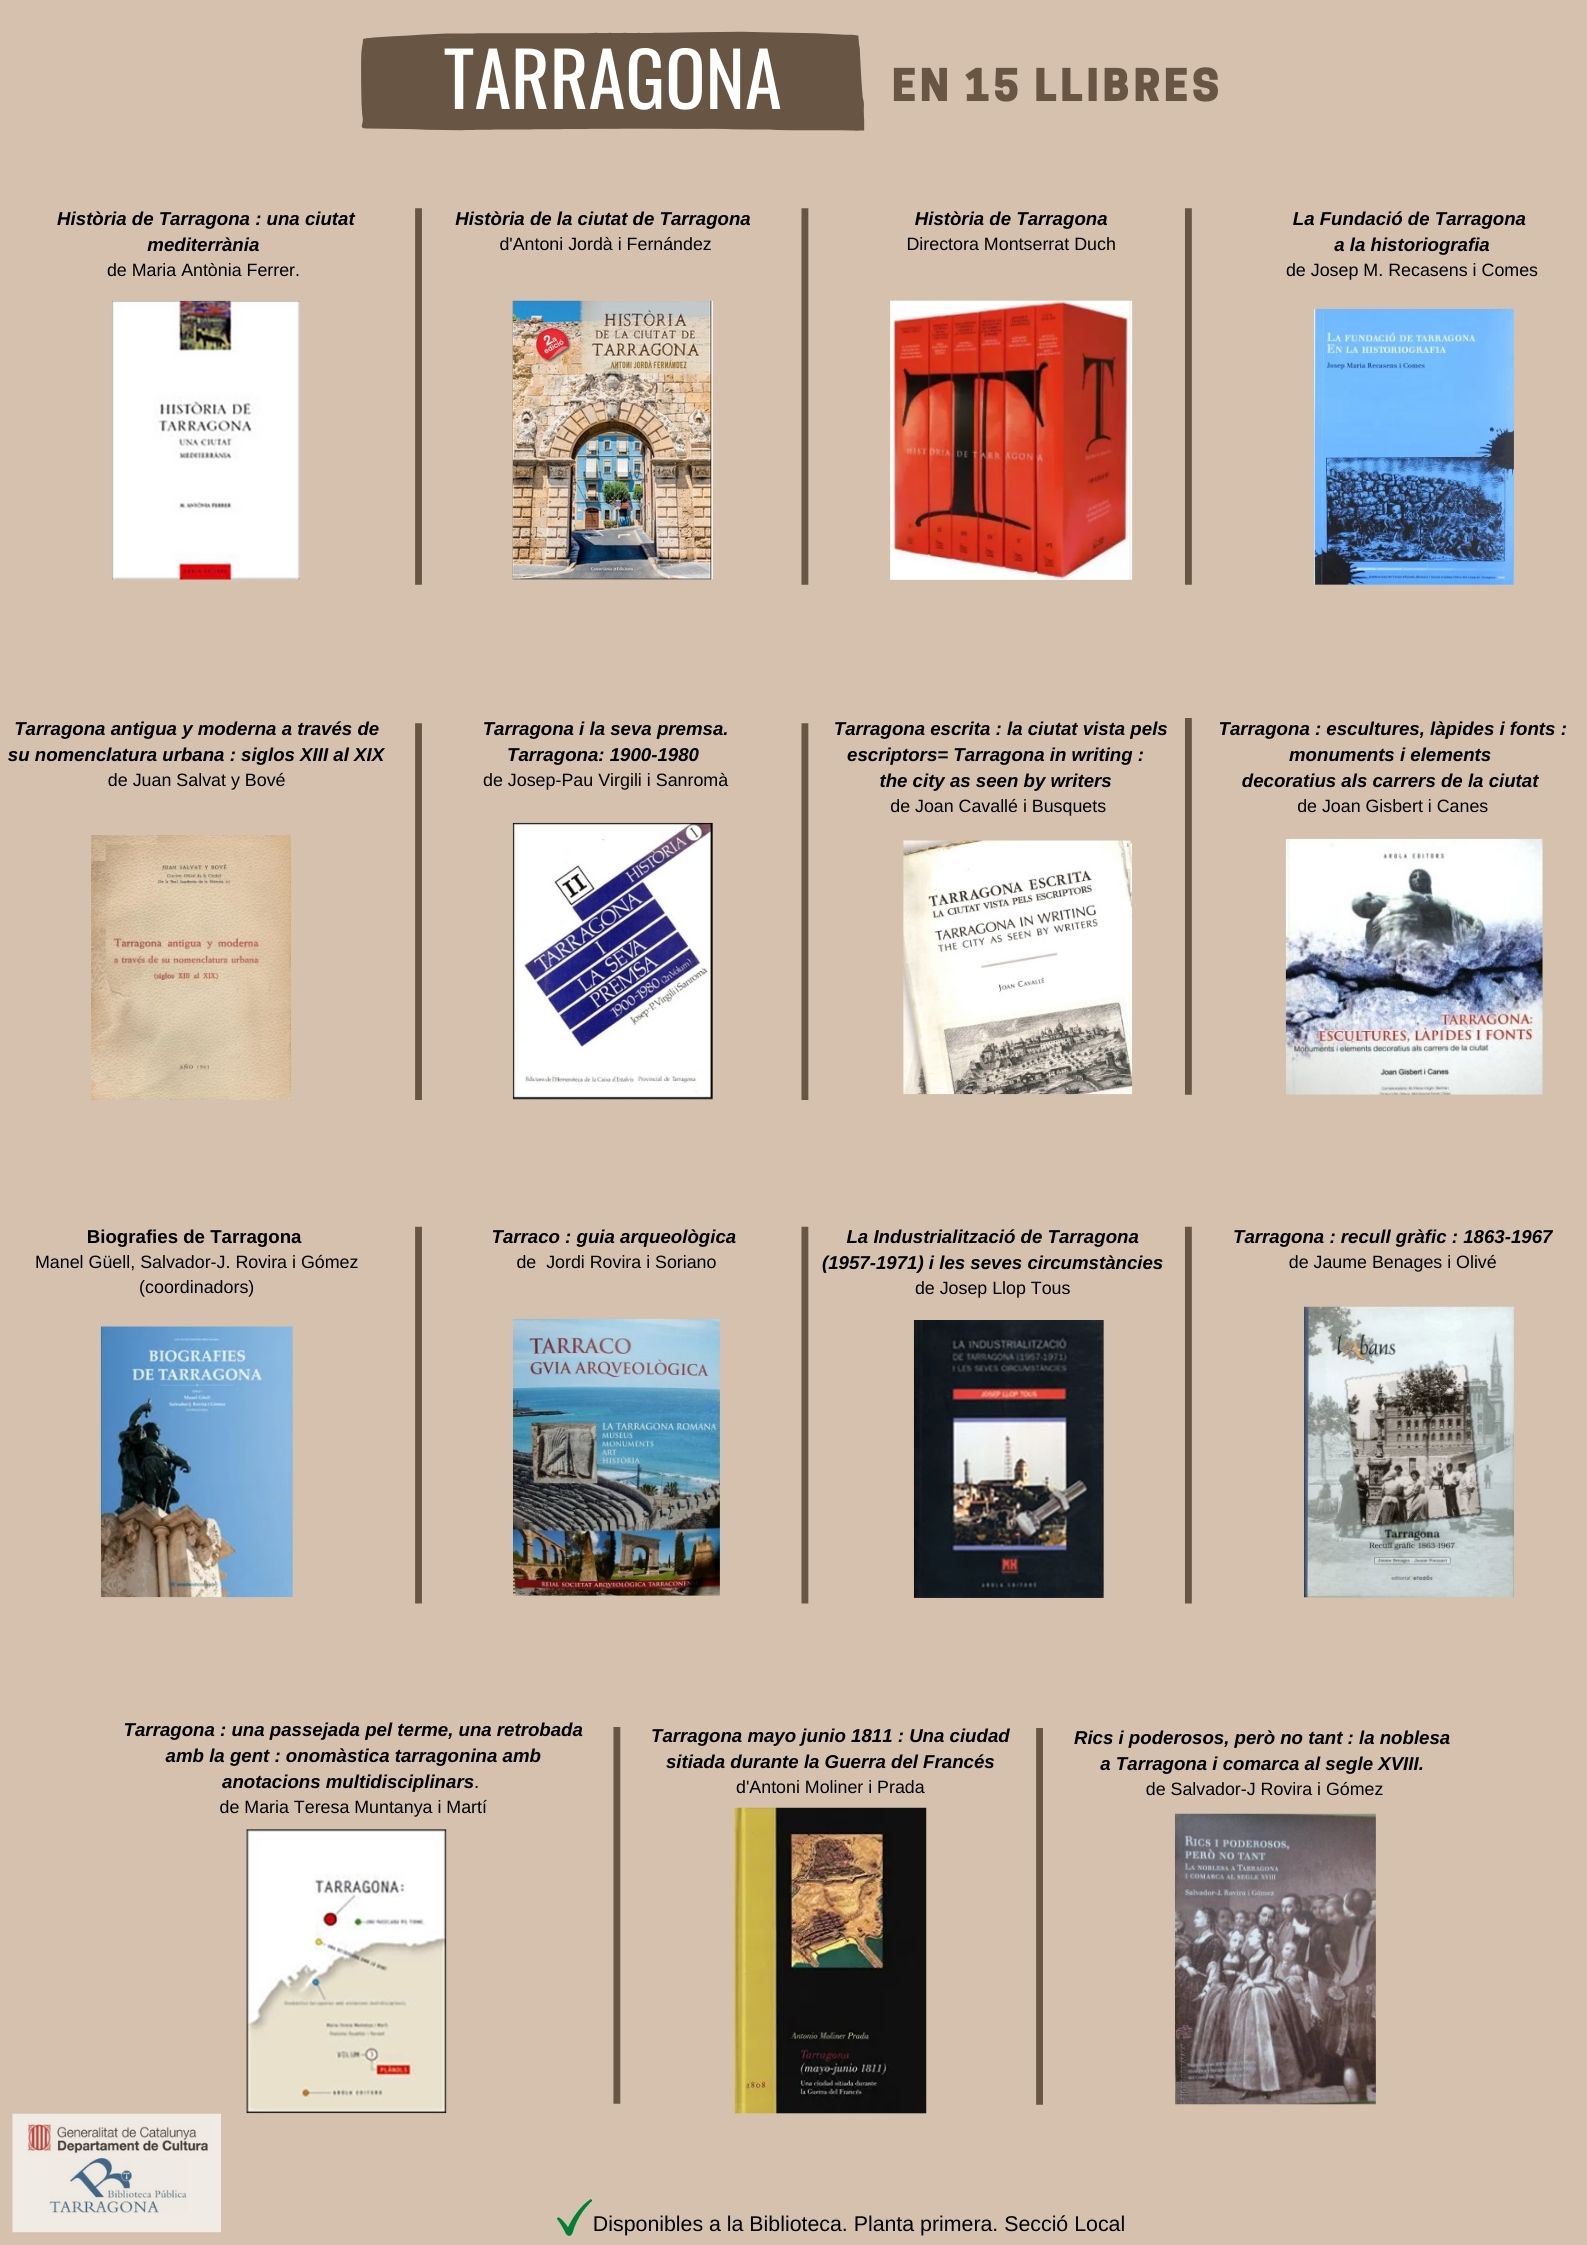 Tarragona en 15 libros